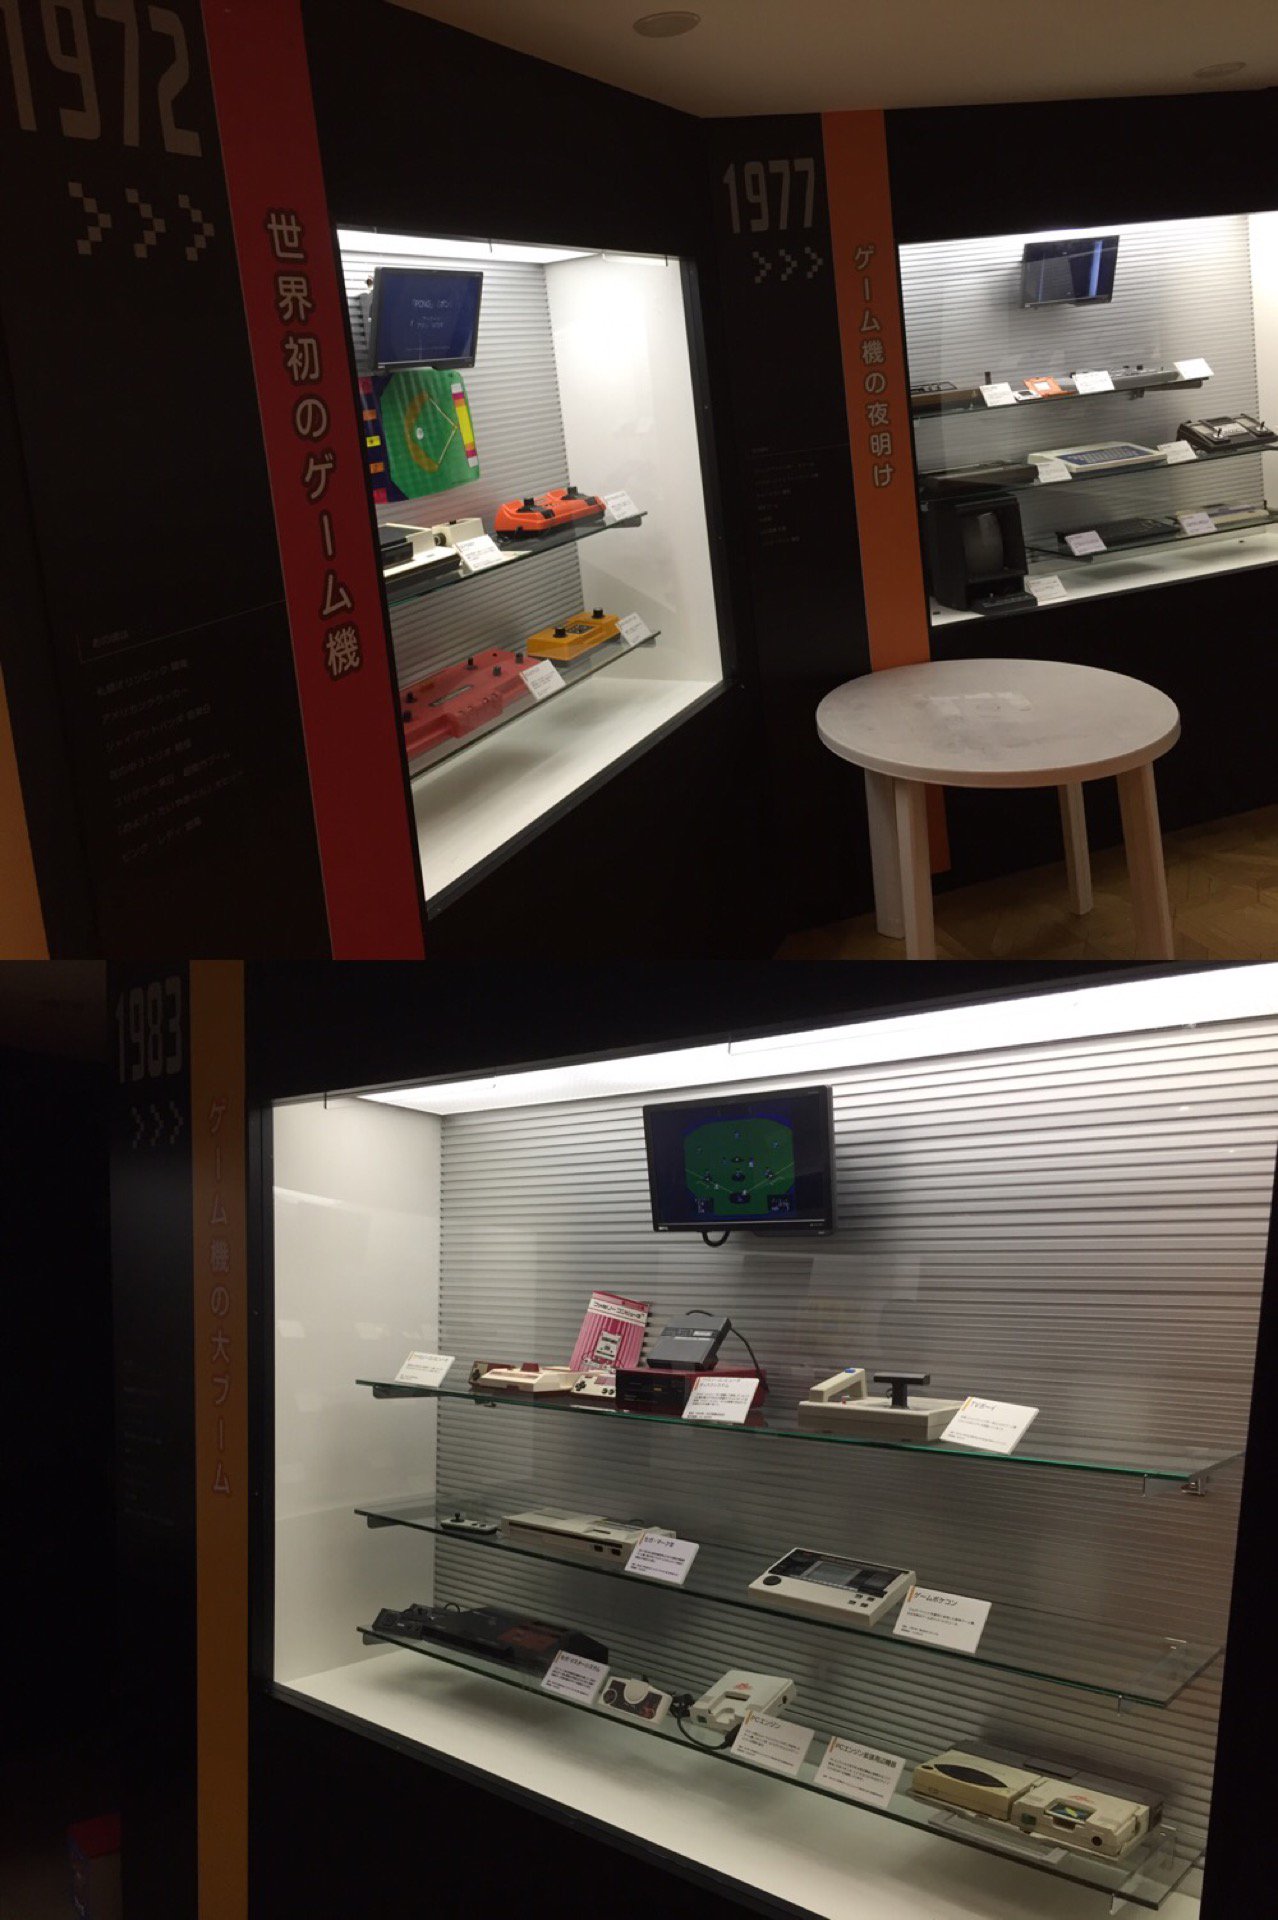 世界初のゲーム機やファミコンなどが展示されてる。 (@ ゲームミュージアム in 佐世保市, 長崎県)  